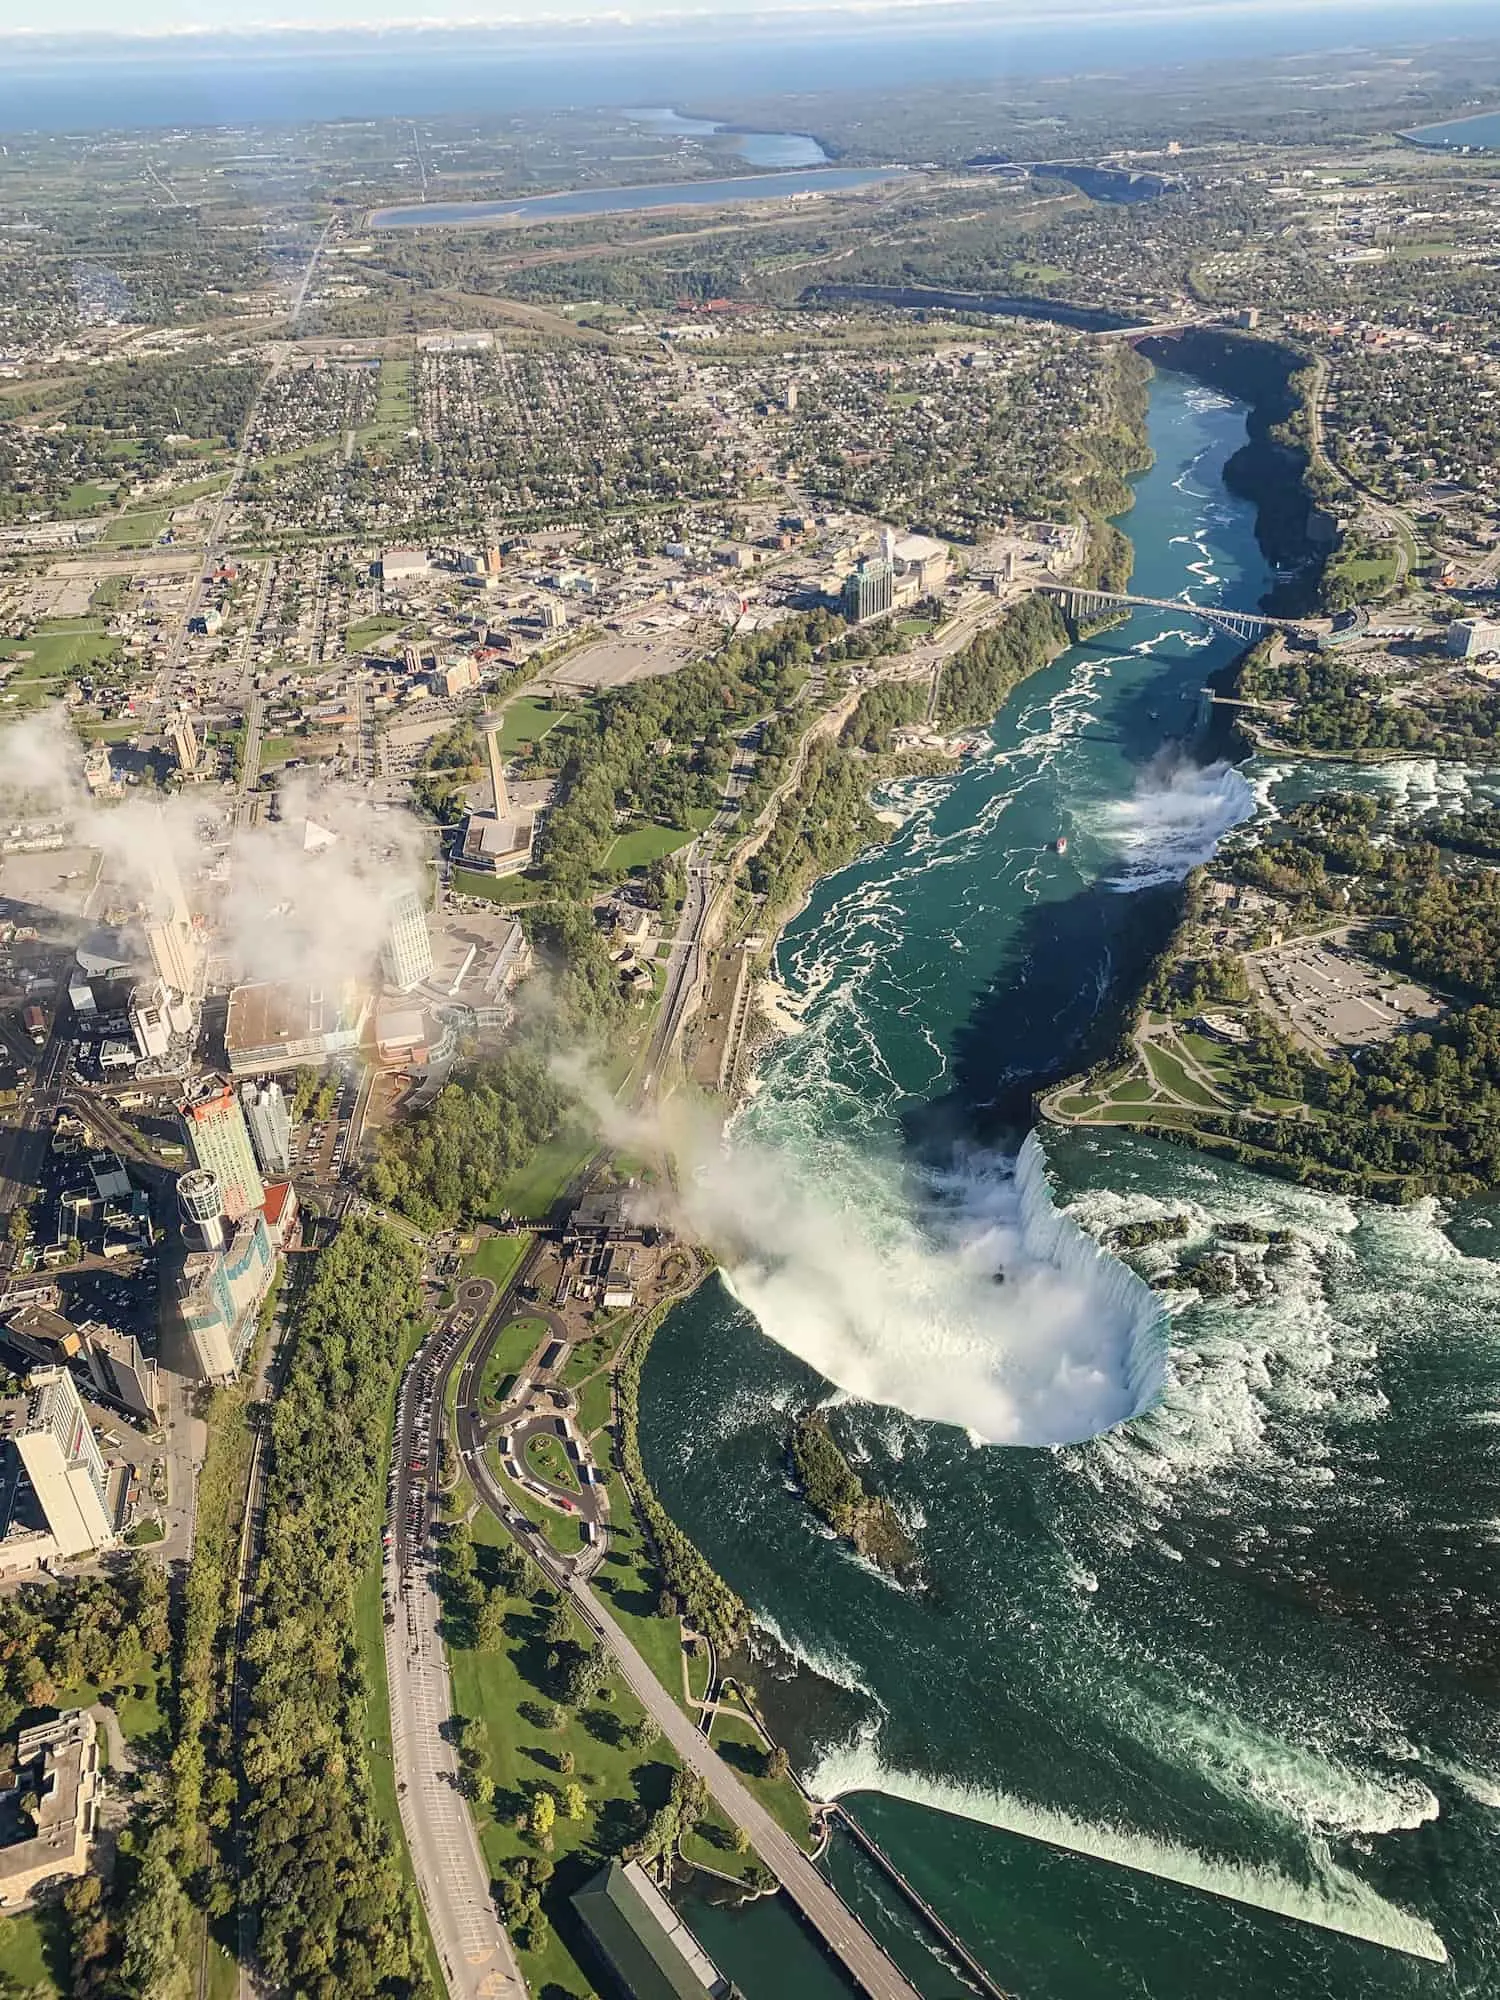 Helicopter ride in Niagara Falls, Ontario